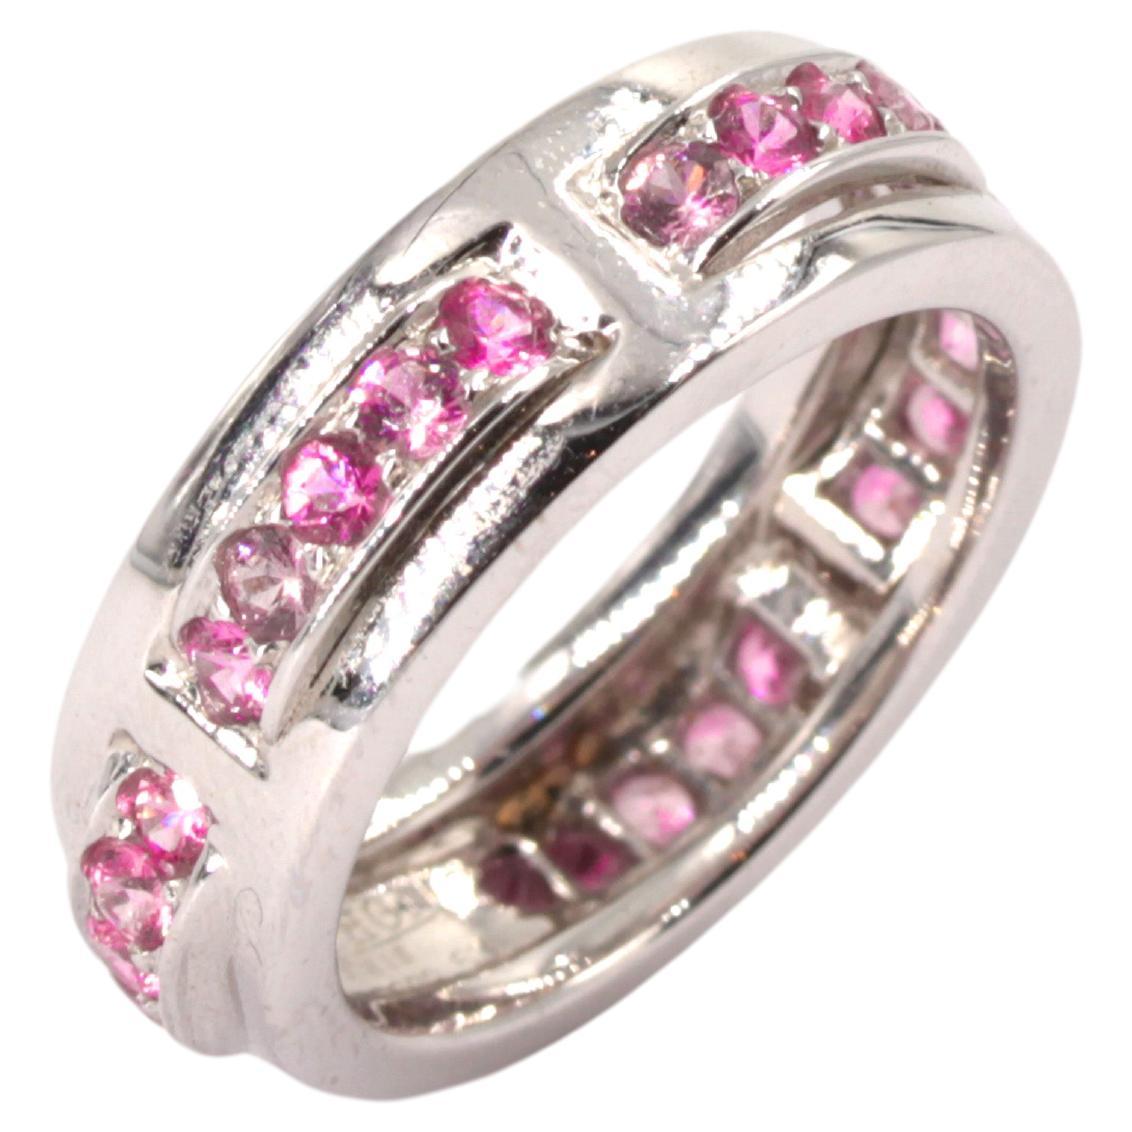 Mathon Paris Pink Sapphires and White Gold Ring